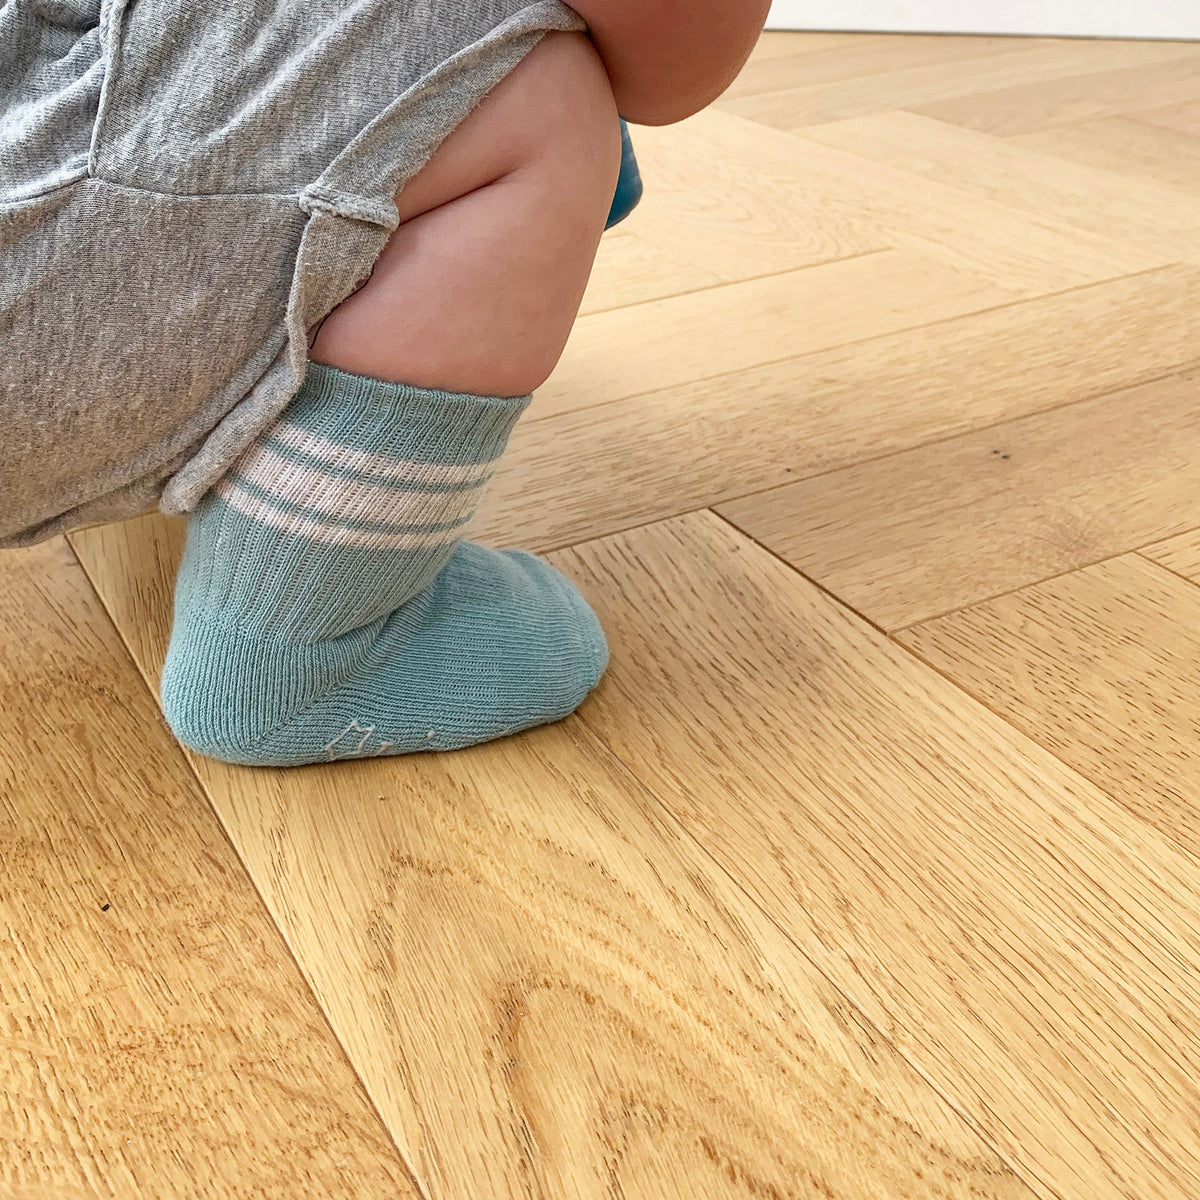 Non-Slip Stay-on Baby & Toddler Organic Quarter Crew Sporty Socks - 5 Pack - Blues